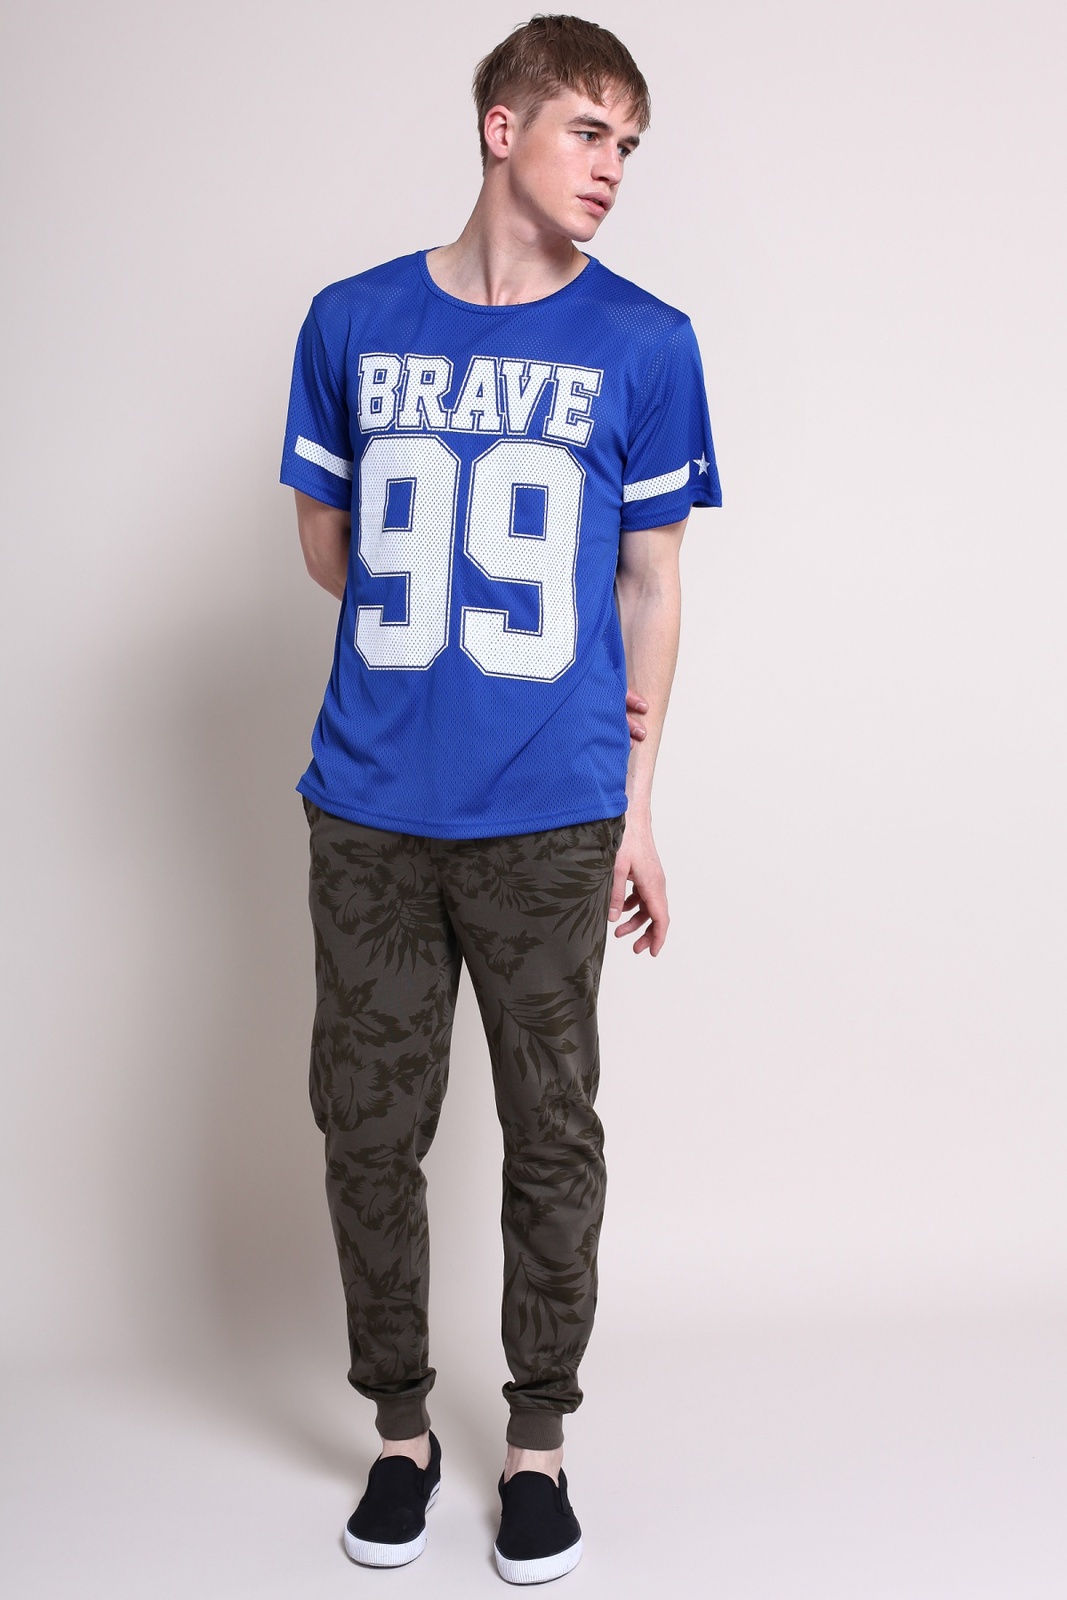 Terranova Brave 99 feliratos sportmez jellegű t-shirt 2015.02.28 fotója